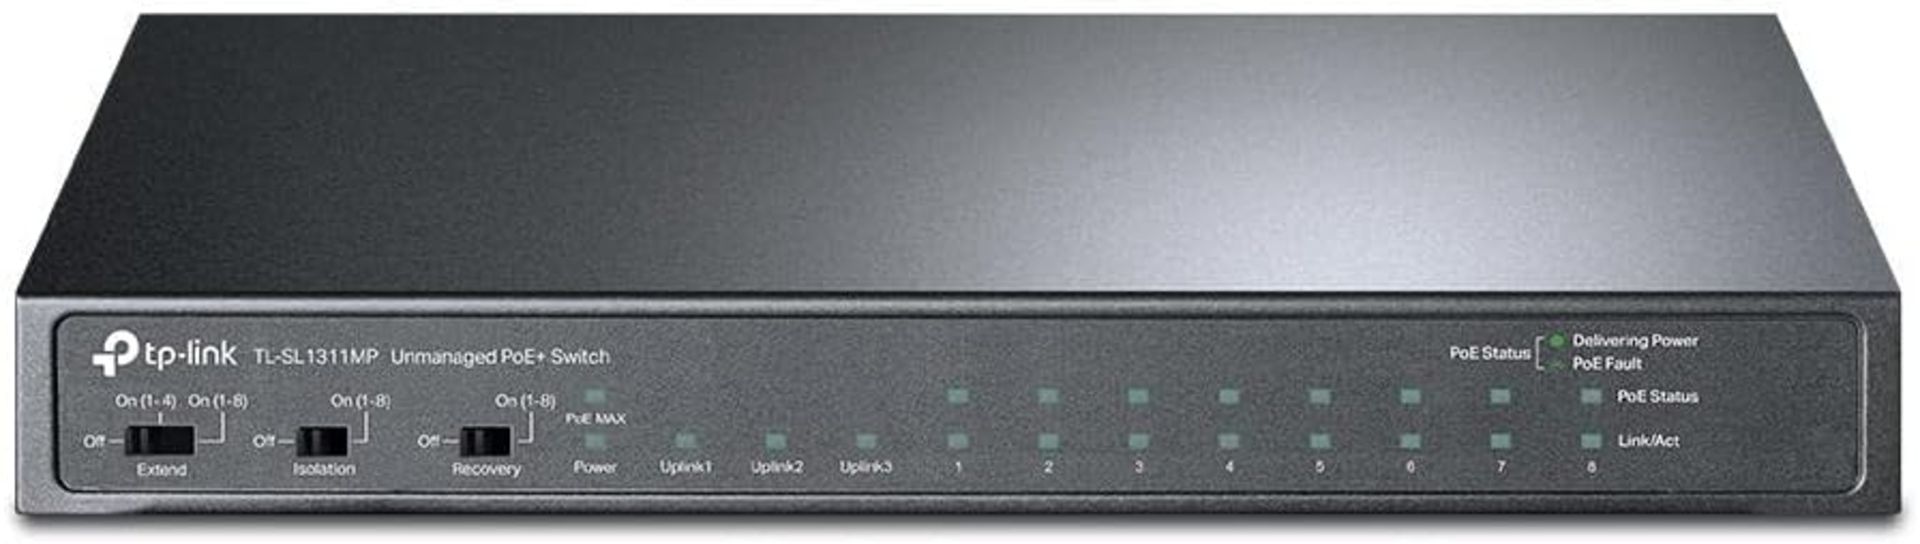 BRAND NEW FACTORY SEALED TP-LINK TL-SL1311MP 8-Port 10/100Mbps + 3-Port Gigabit Desktop Switch